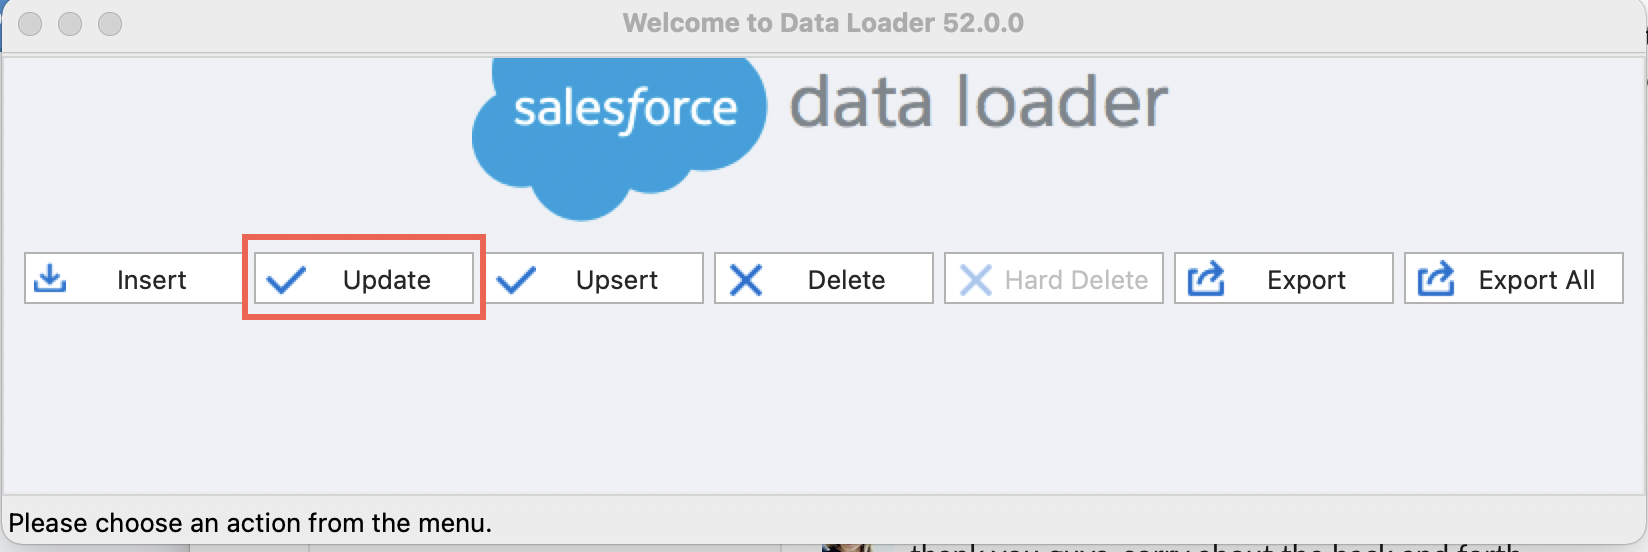 update_data_loader.png